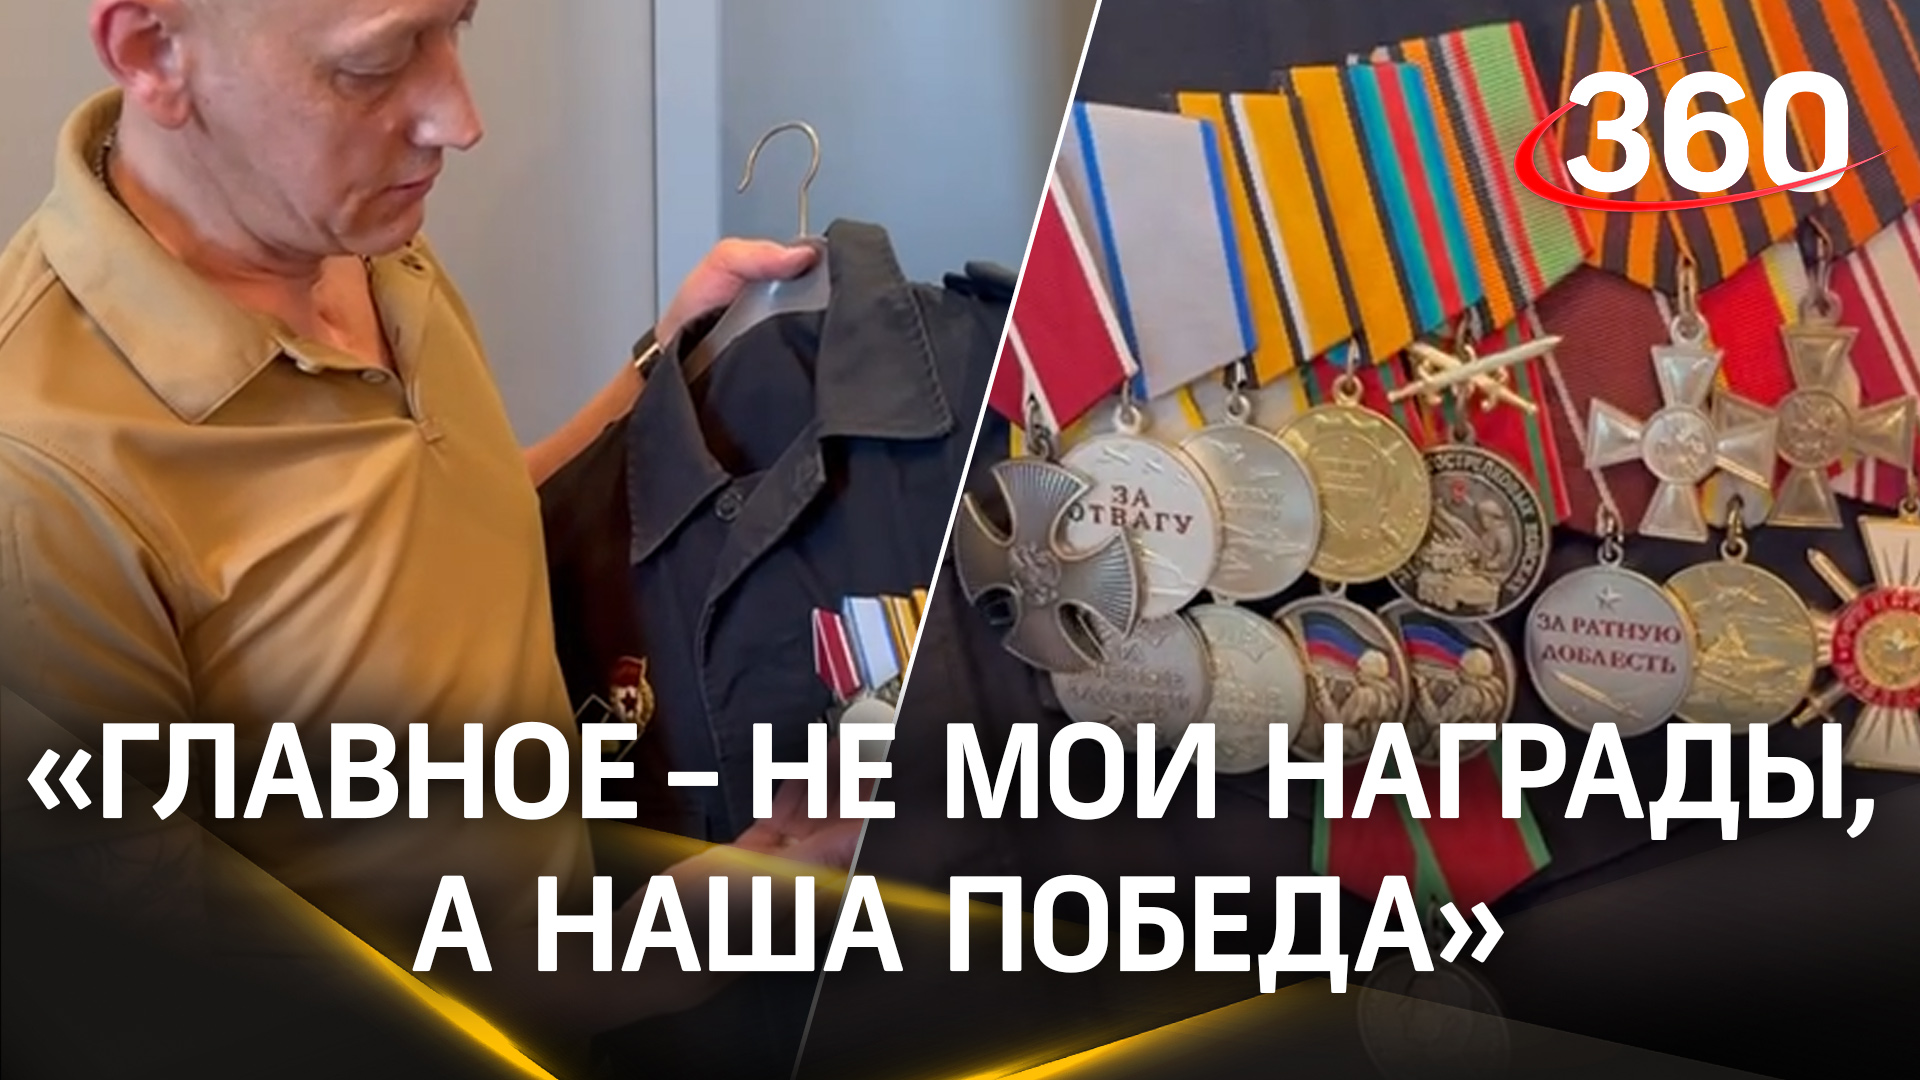 «Главное не мои награды, а наша победа»: участник боев за освобождение Донбасса с 2014 года